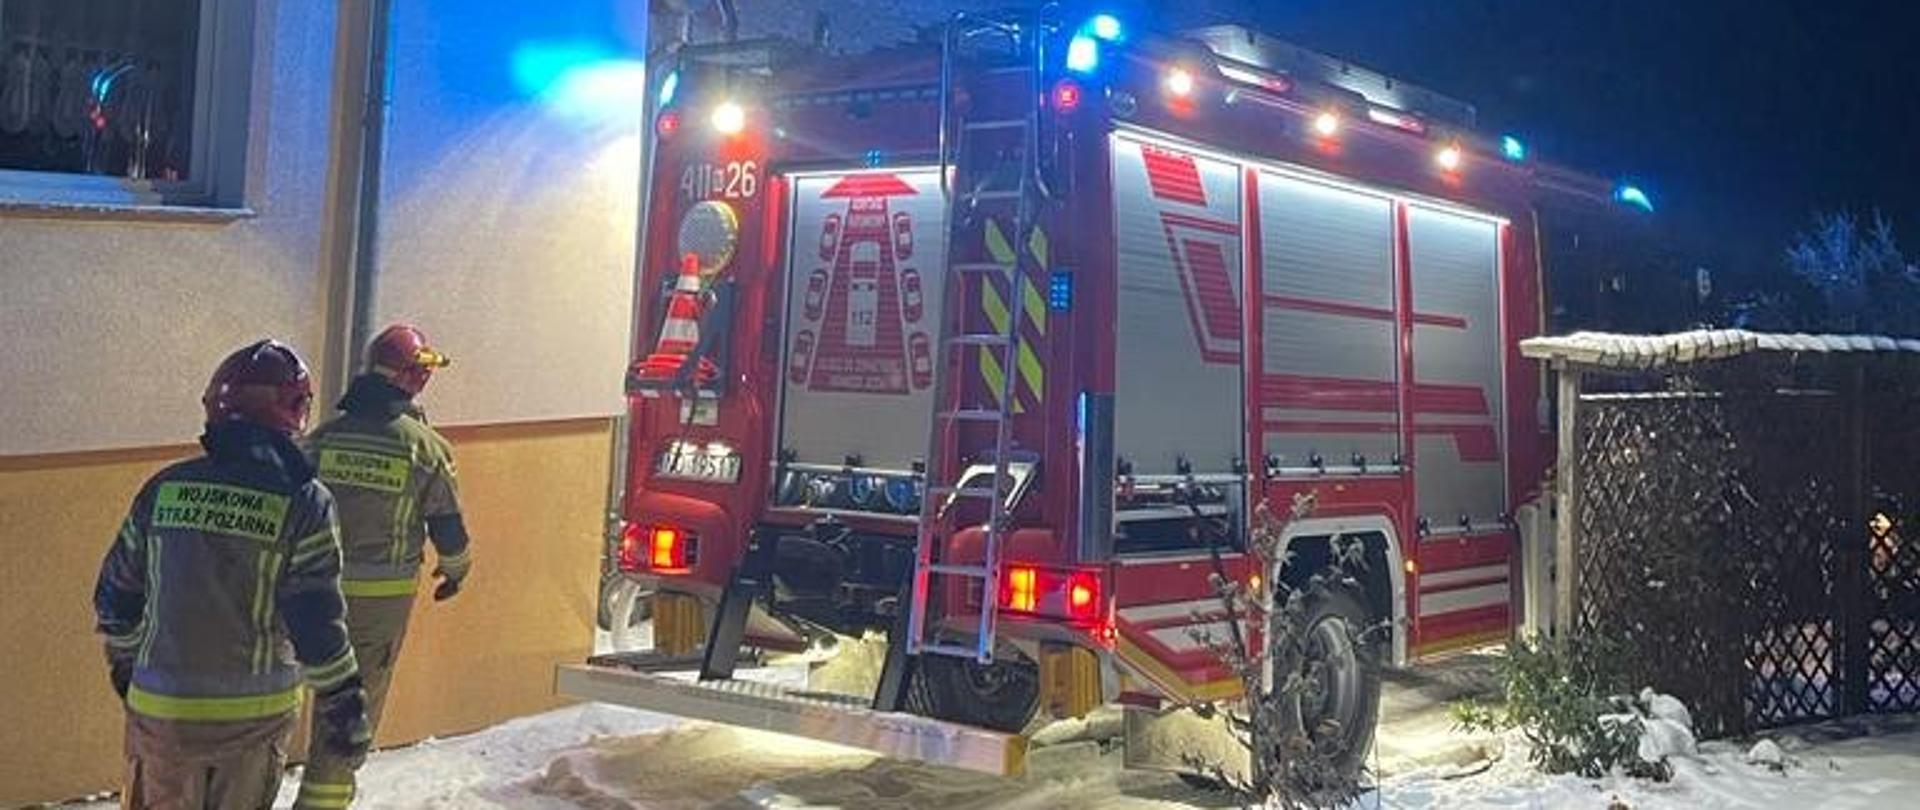 Zdjęcie zrobione nocą. Przy budynku stoi na światłach duży czerwony samochód strażacki. Przy nim strażacy. Biało od śniegu.